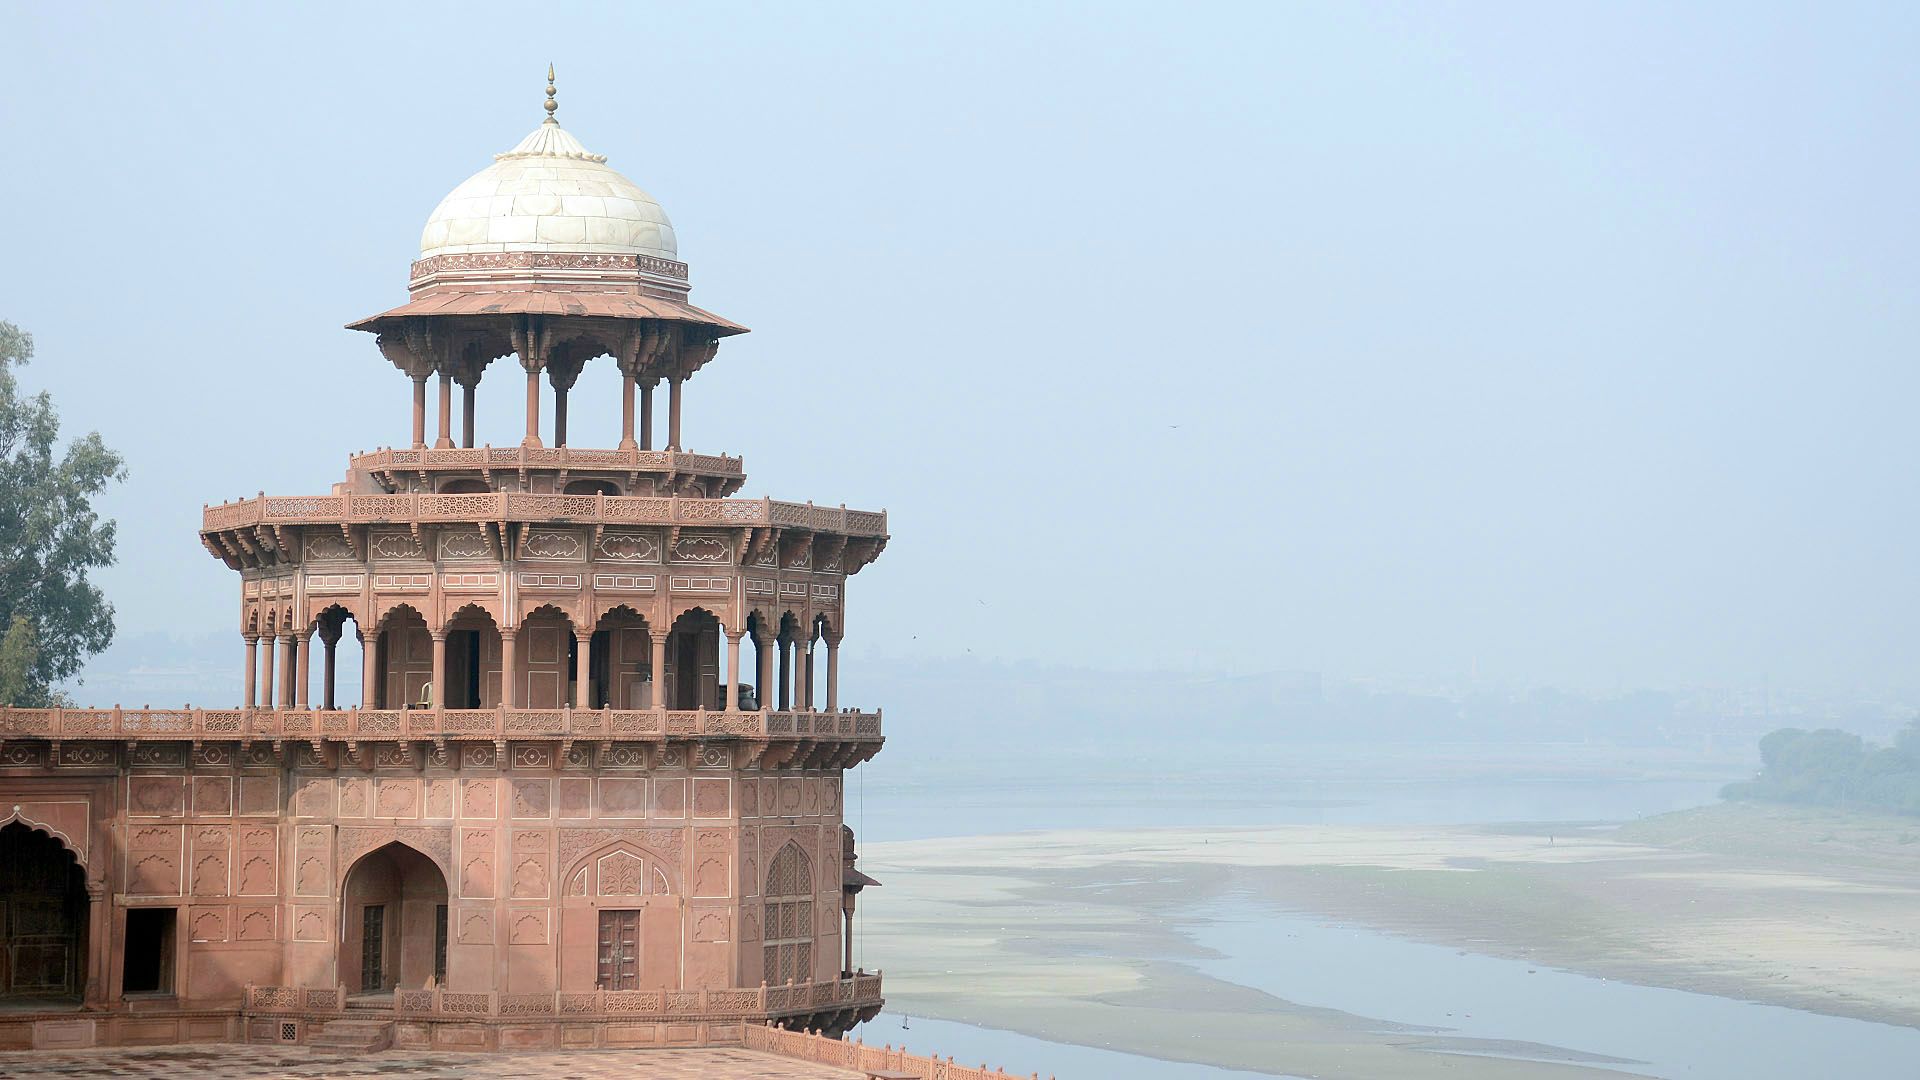 Taj Mahal - jeden z siedmiu cudów nowożytnego świata. Indyjskie Mauzoleum wzniesione przez Szahdżahana z Dynastii Wielkich Mogołów na pamiątkę ukochanej żony Mumtaz Mahal